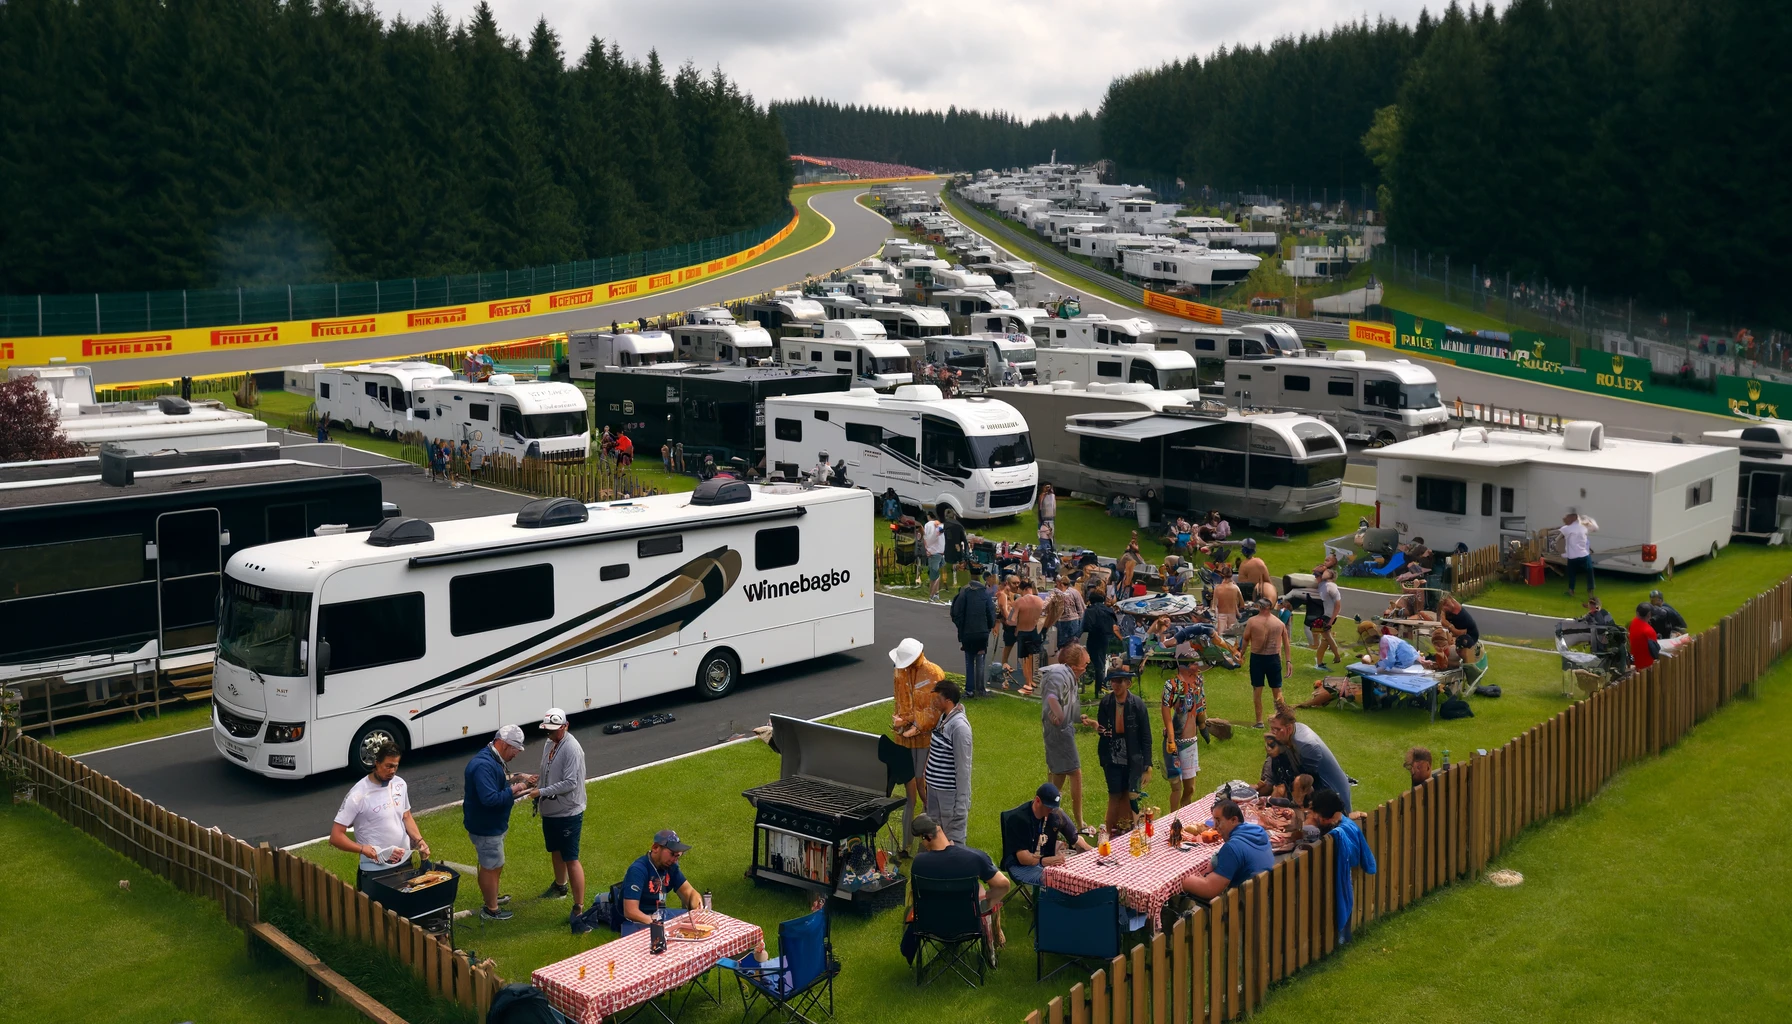 Spa F1 camping scene